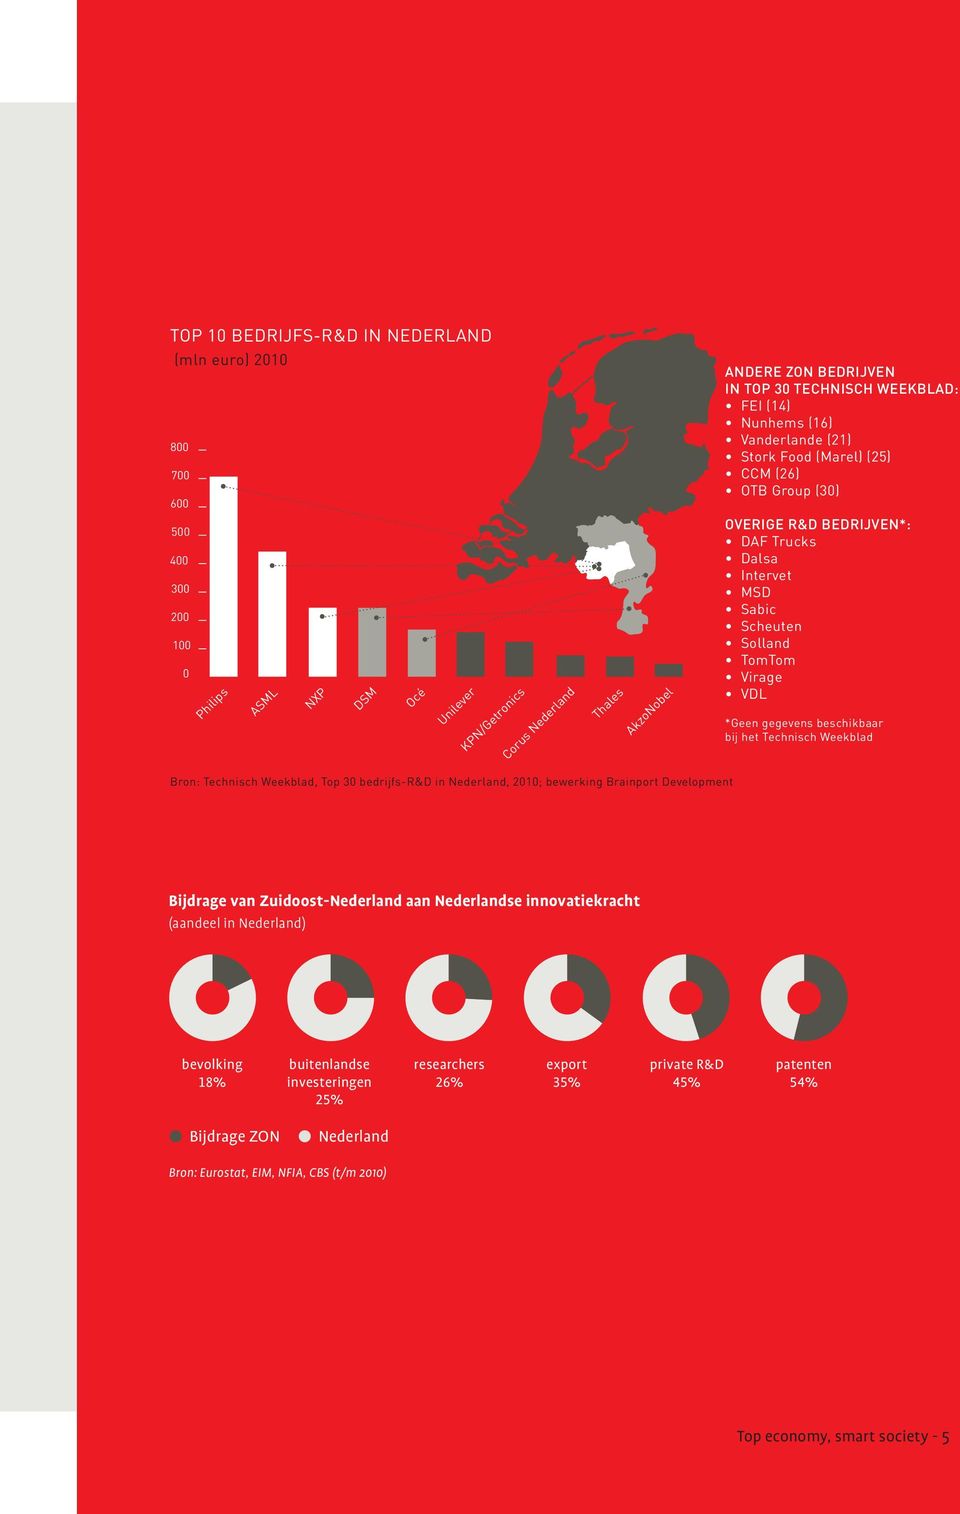 *Geen gegevens beschikbaar bij het Technisch Weekblad Bron: Technisch Weekblad, Top 30 bedrijfs-r&d in Nederland, 2010; bewerking Brainport Development Bijdrage van Zuidoost-Nederland aan Nederlandse